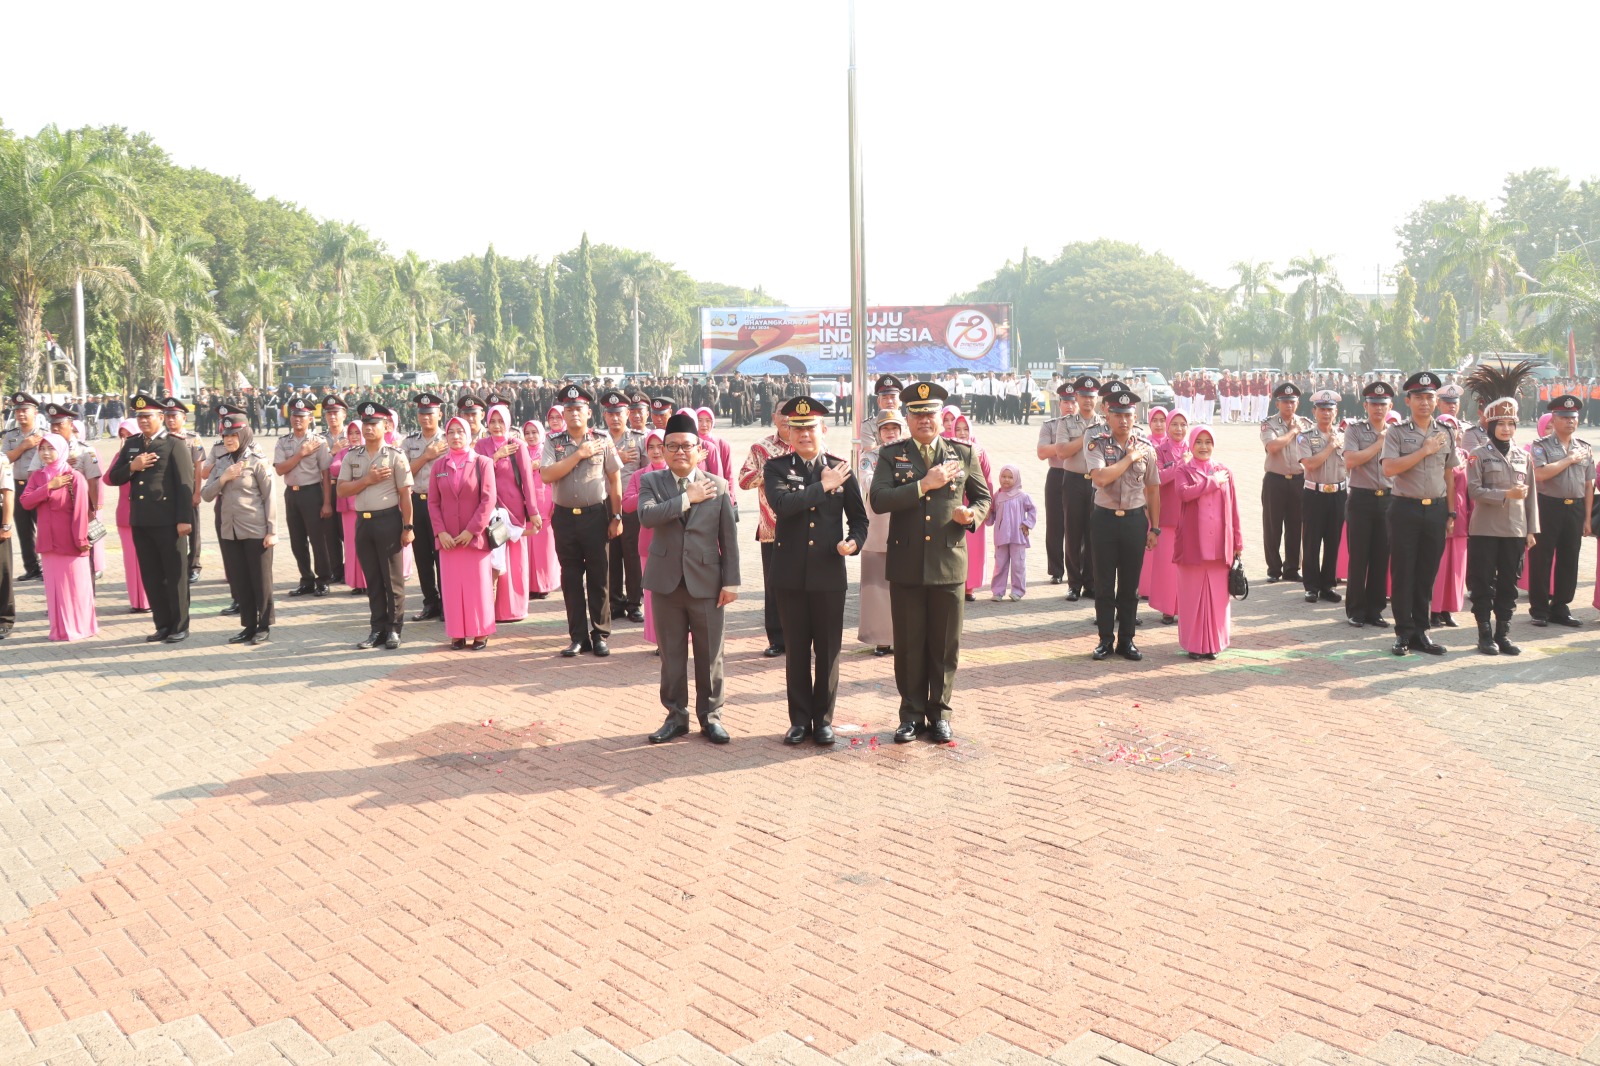 51 Personel Polres Gresik Naik Pangkat di Hari Ulang Tahun Ke-78 Bhayangkara